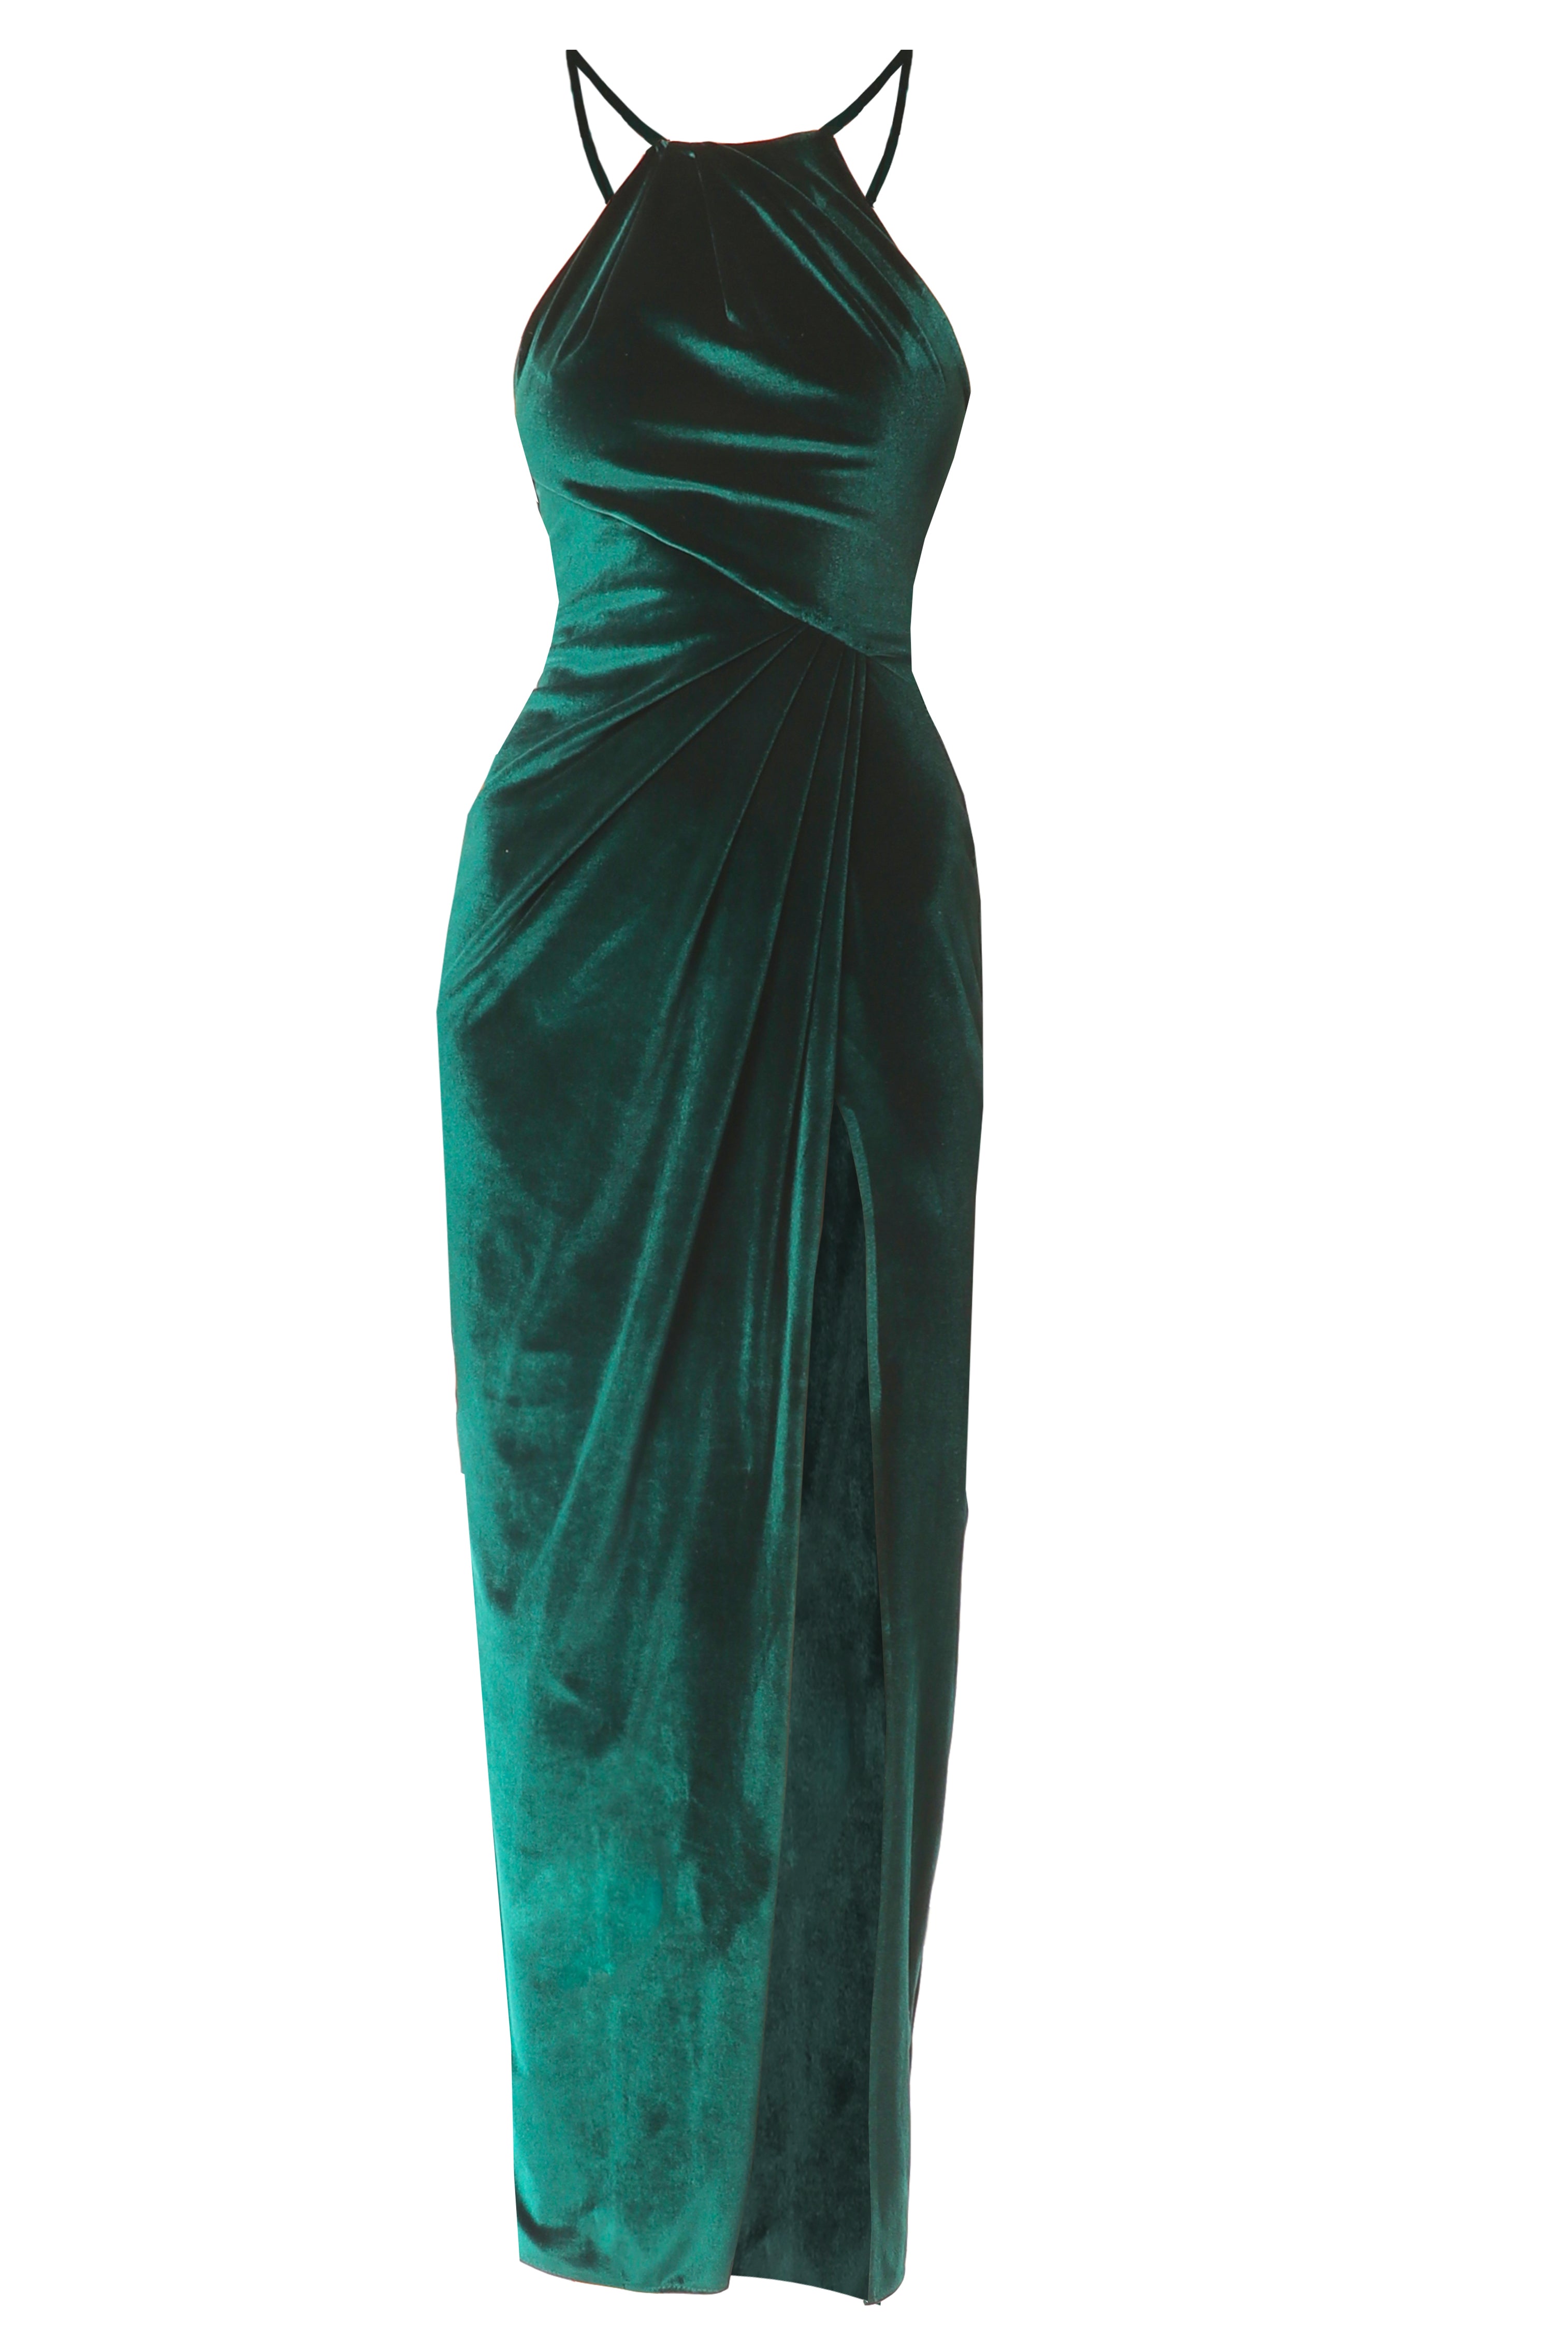 Aksamitna drapowana sukienka Sofia Emerald green